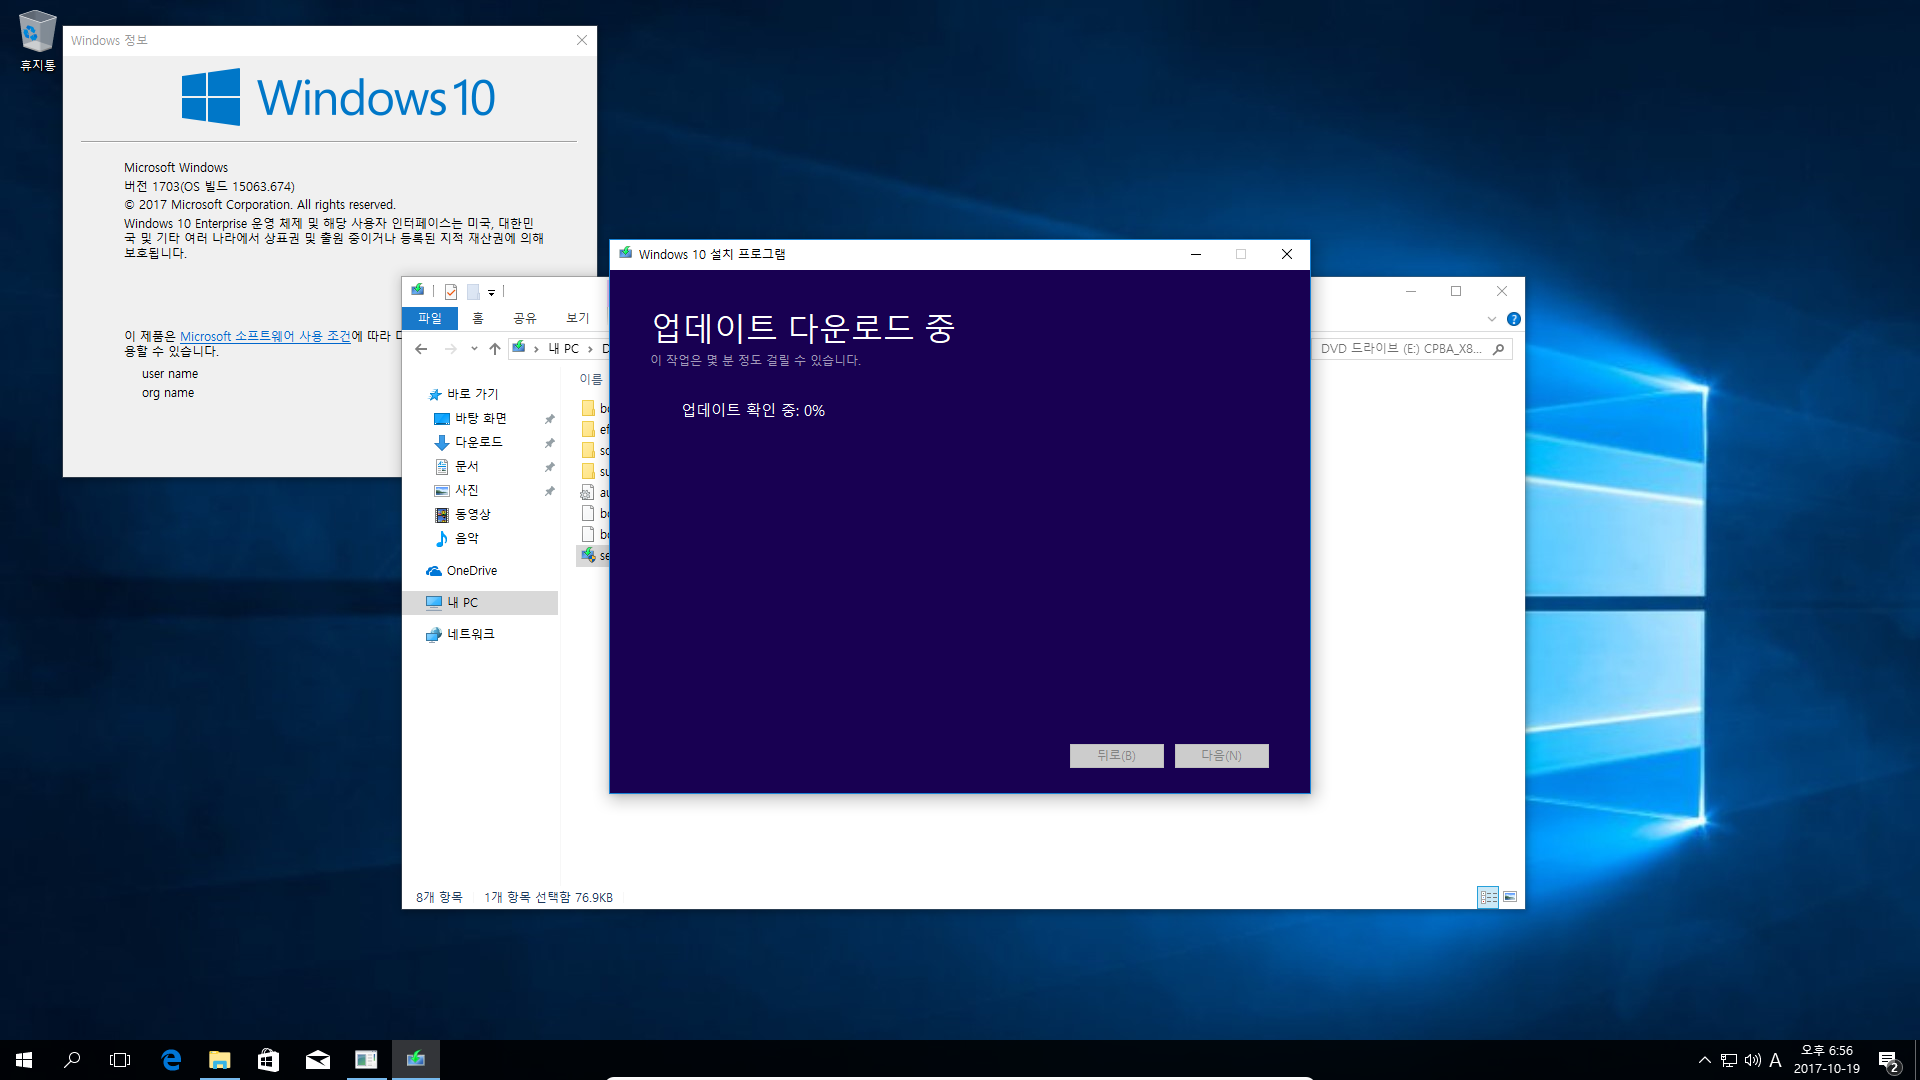 Windows 10 버전1709 엔터프라이즈로 업그레이드 테스트 - 버전1703 에서 - ISO 더블클릭 또는 엔터로 탑재 후에 setup.exe 실행으로 업그레이드 2017-10-19_185619.png